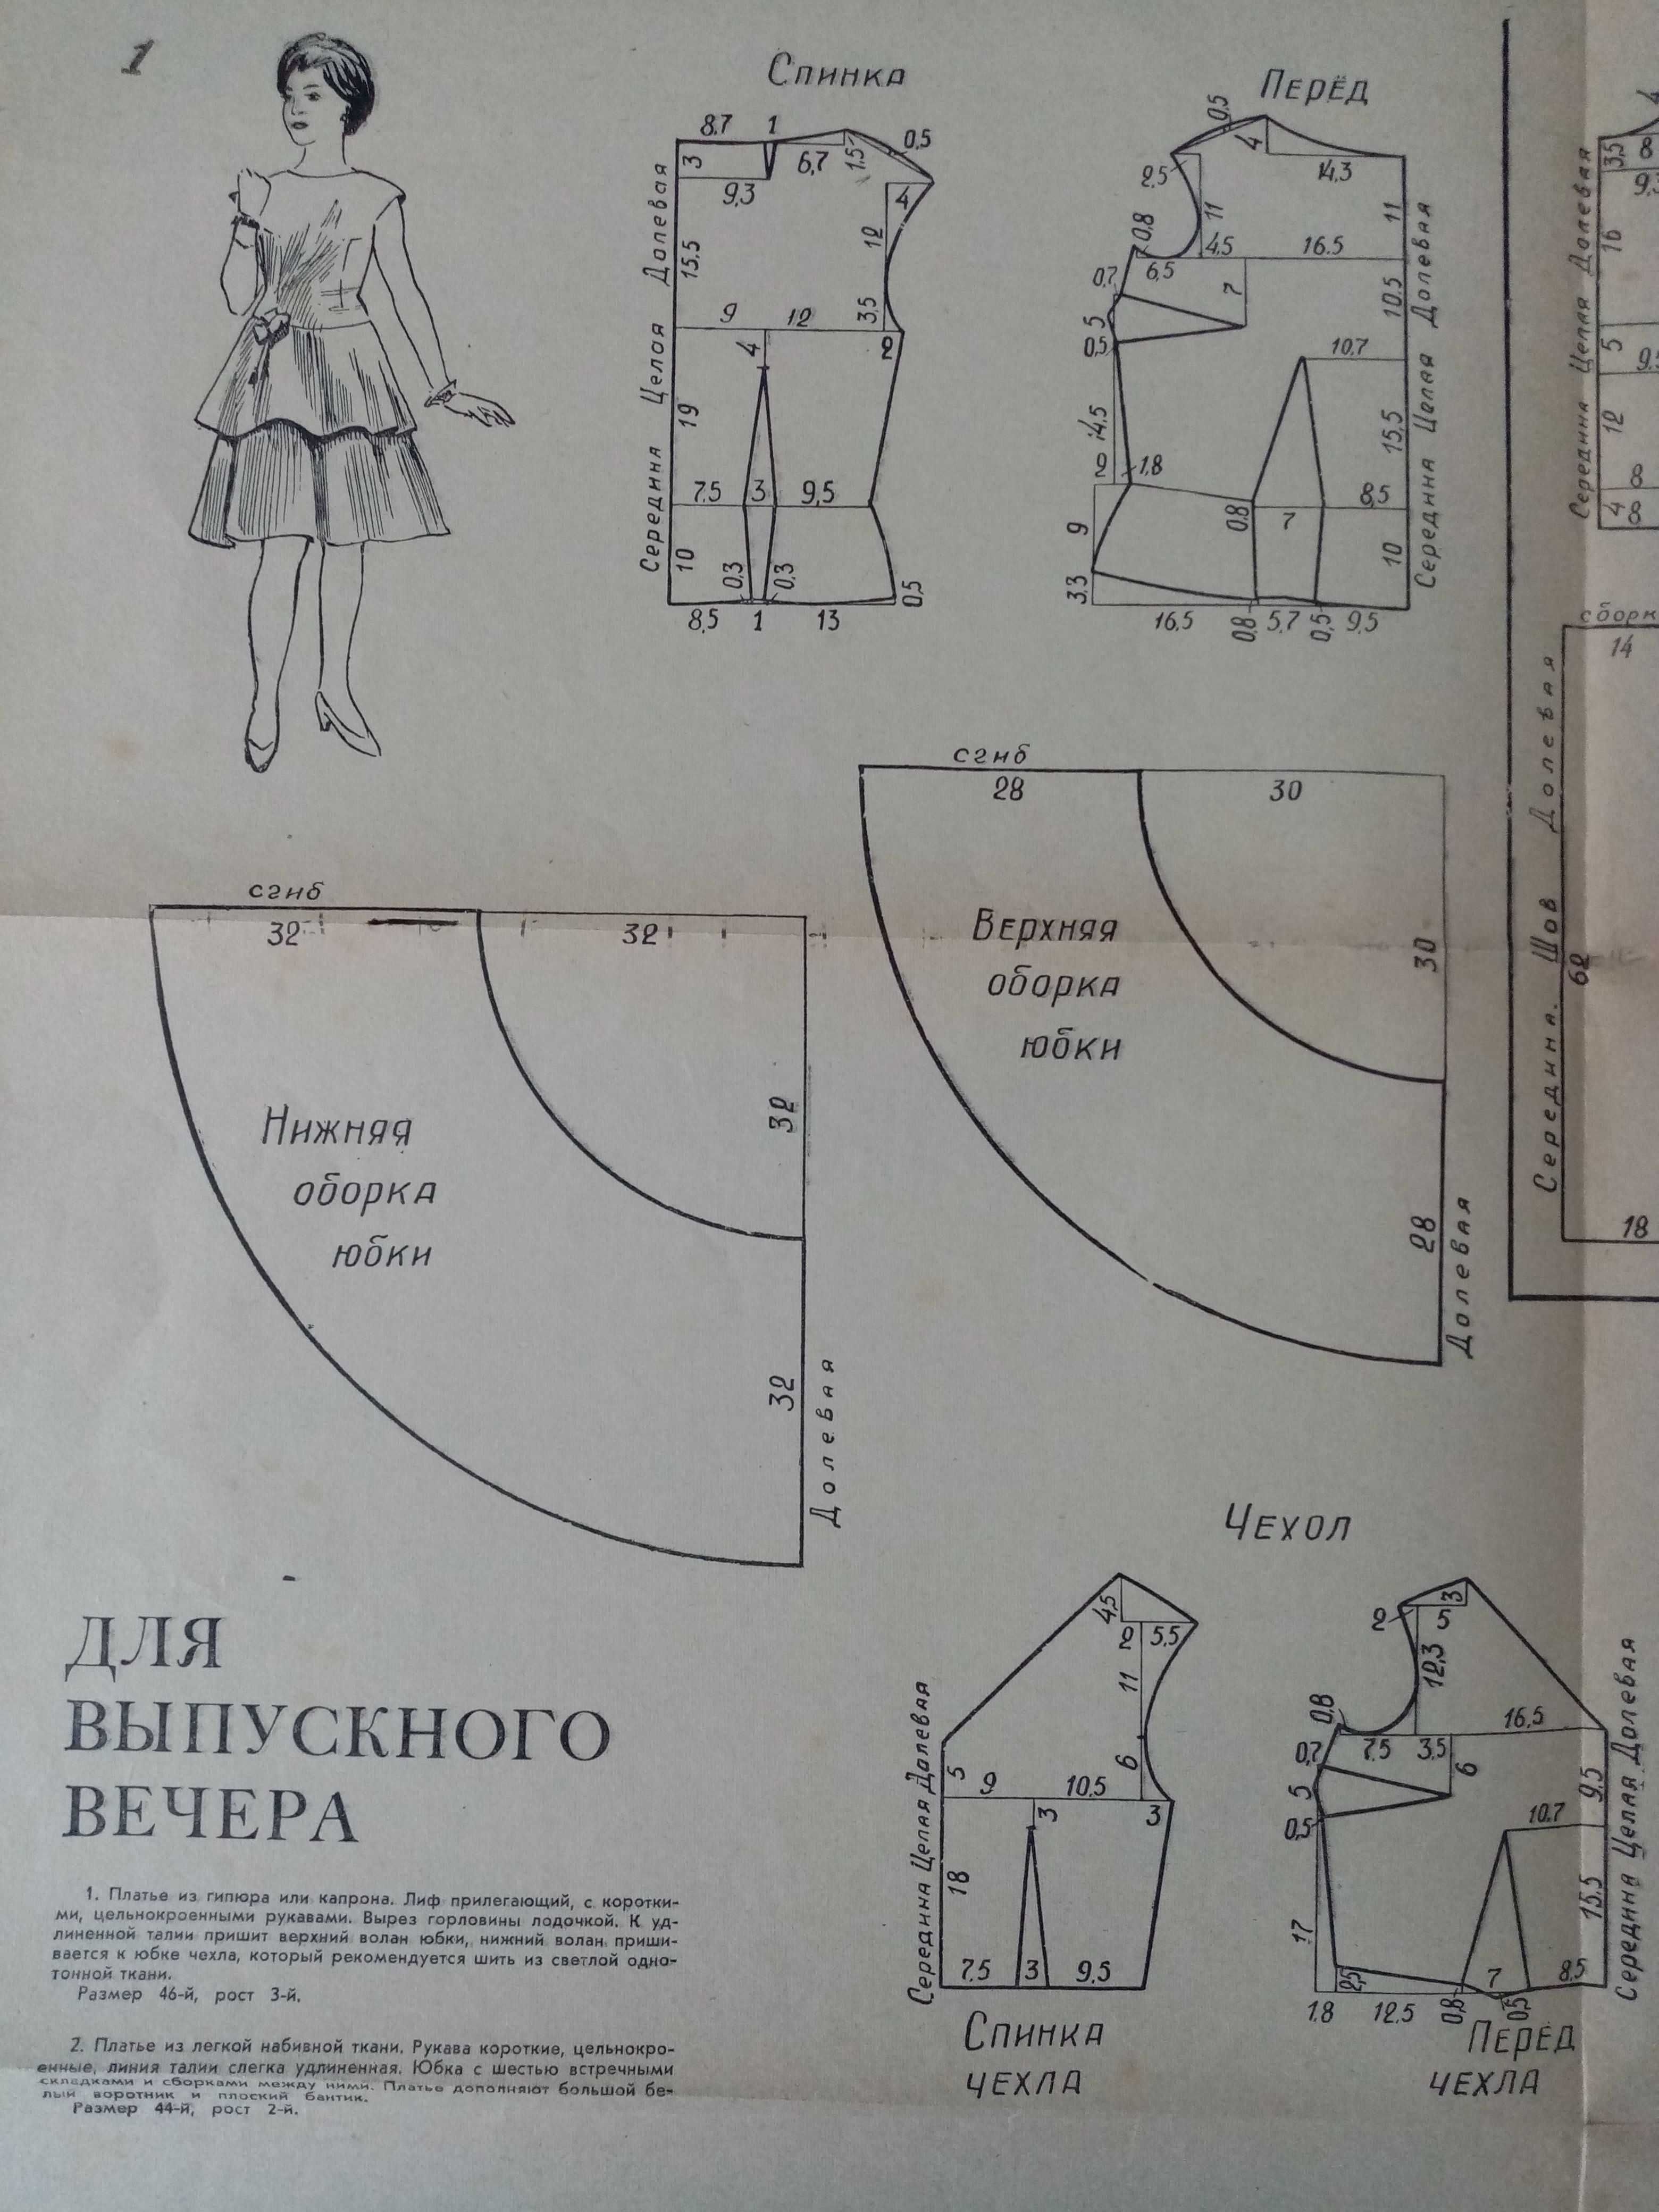 Szkic, instrukcja szycia fartucha z miesięcznika "Крестьянка"